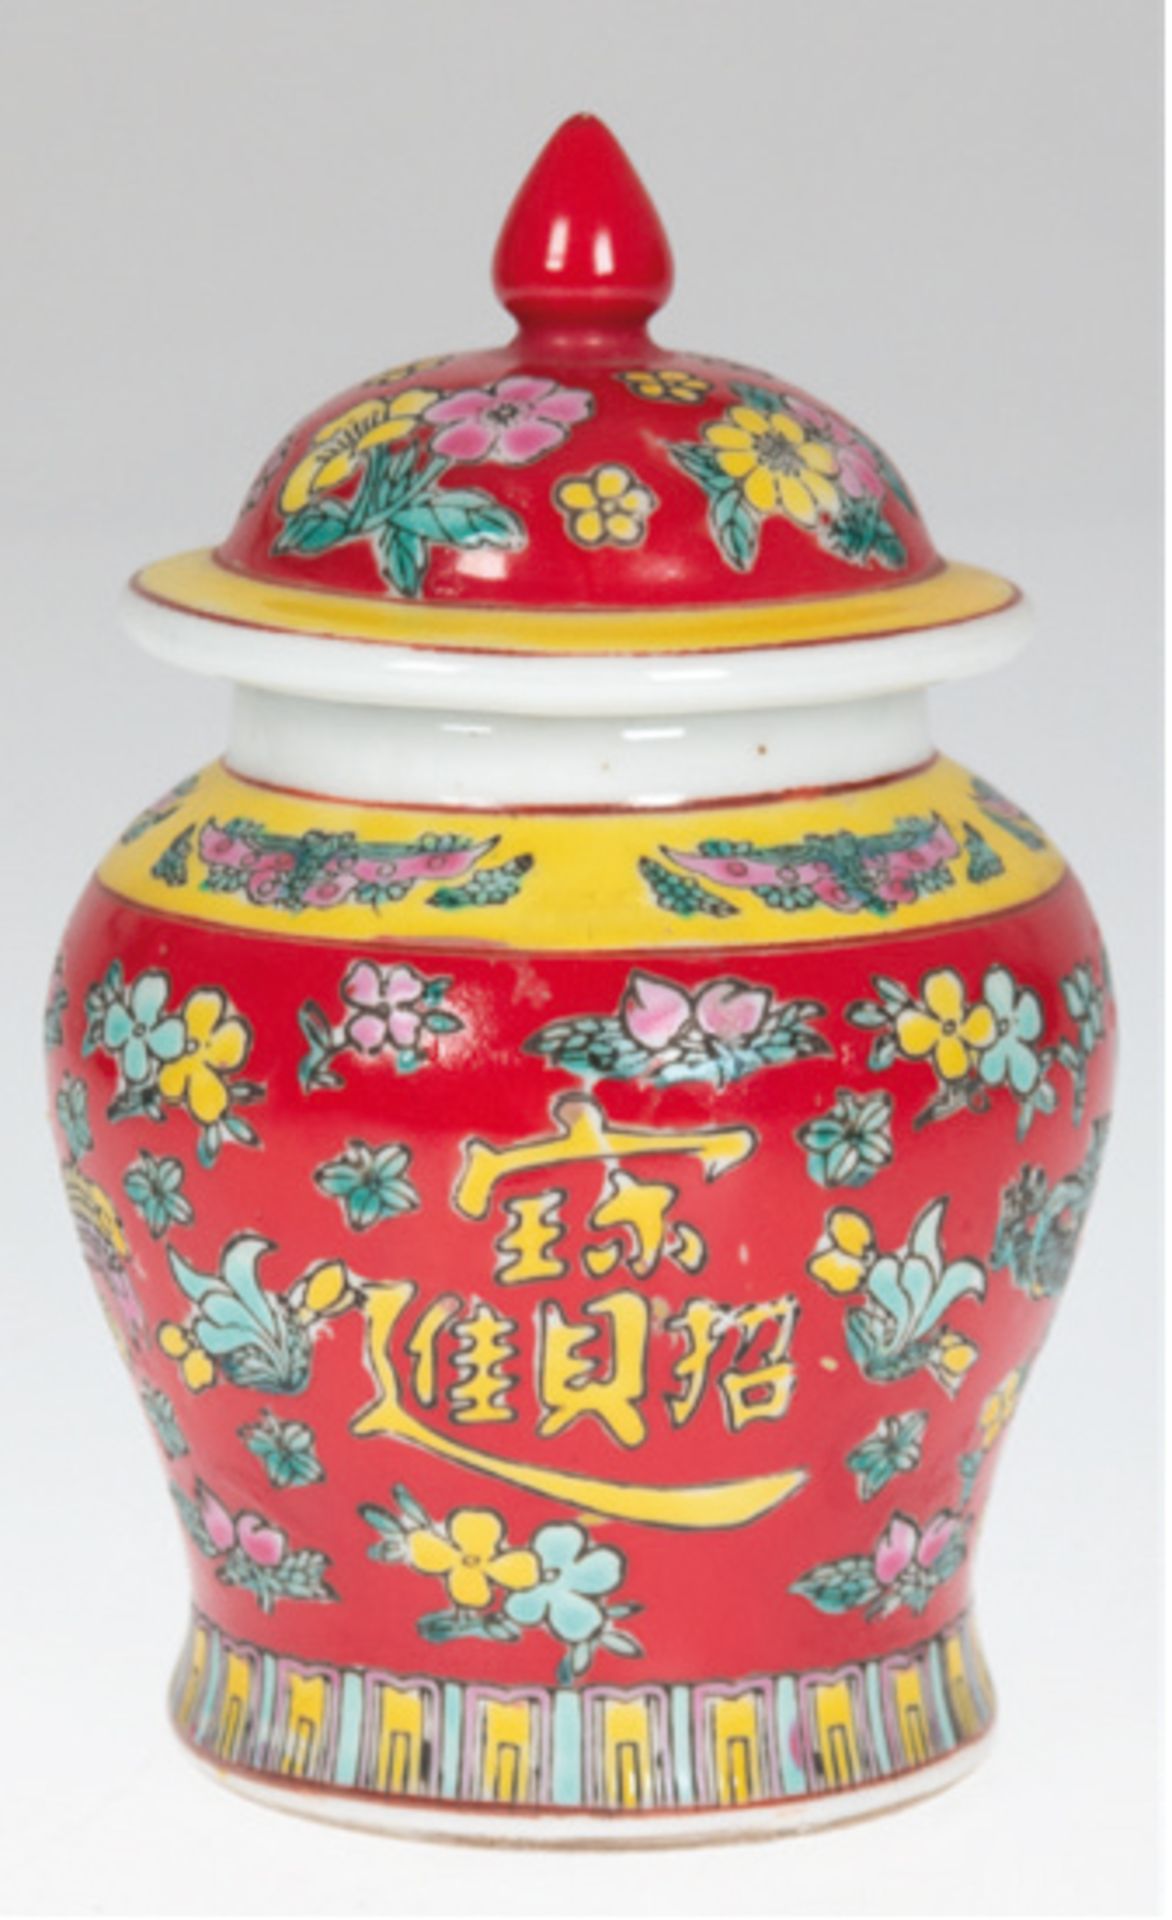 Kleine Deckelvase, China, bauchige Form, mit umlaufendem Floral- und Drachendekor auf rotem Grund, 